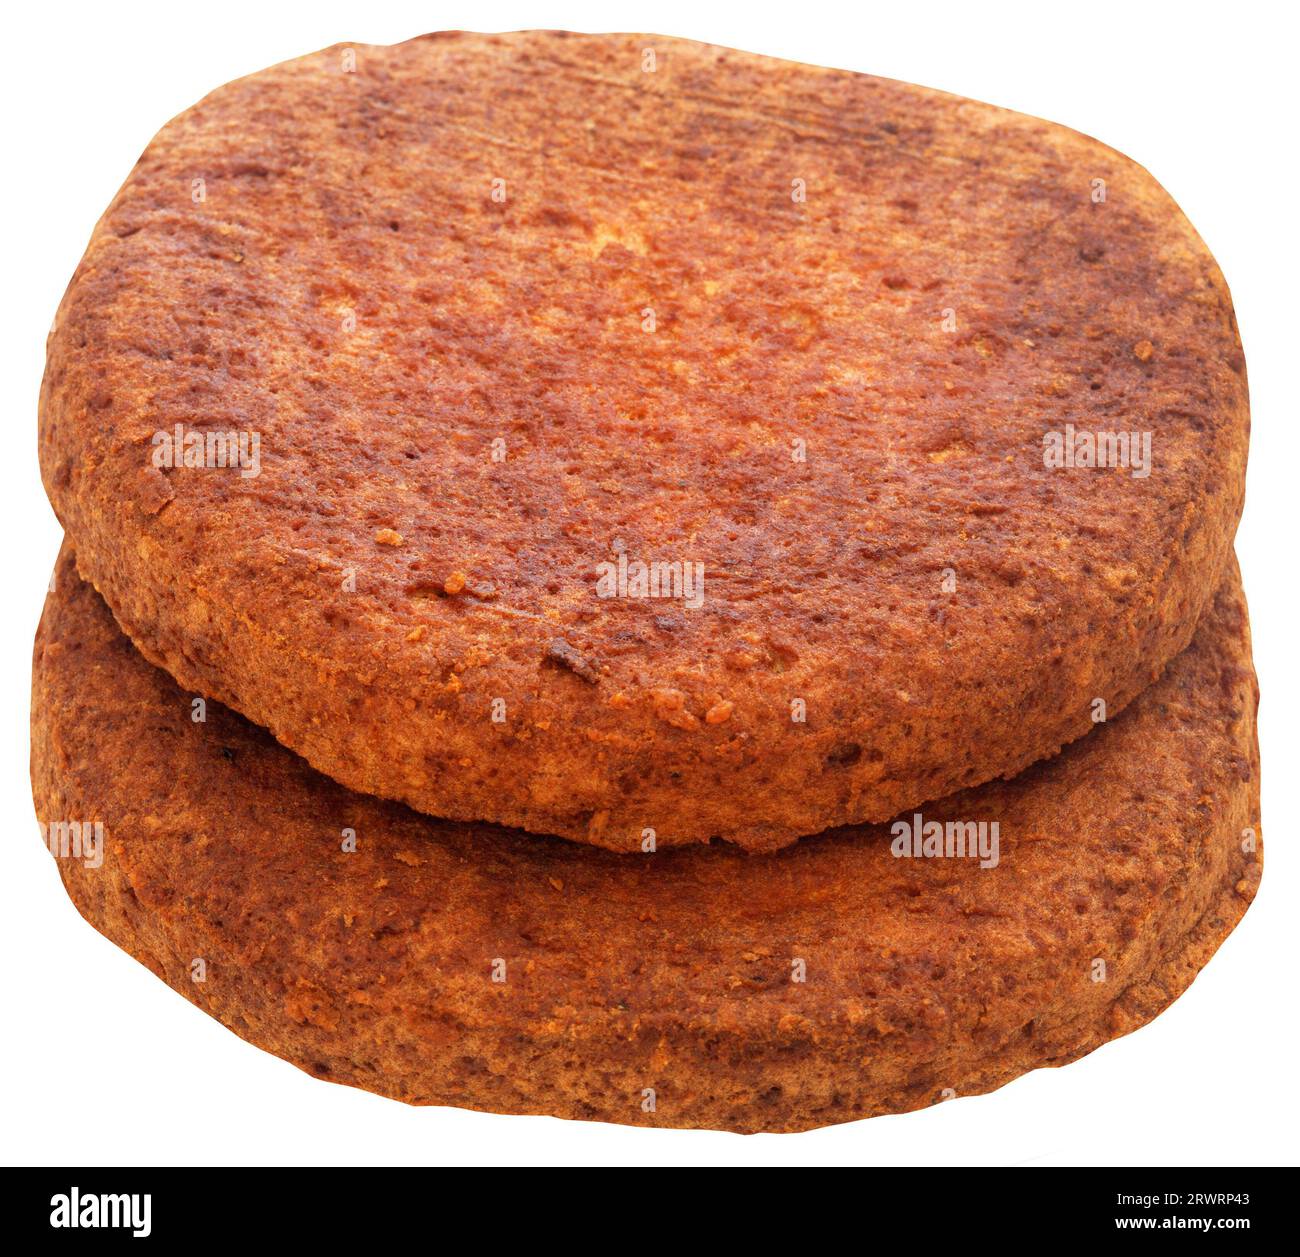 Rinderpastete zur Herstellung von Burger und Sandwich Stockfoto